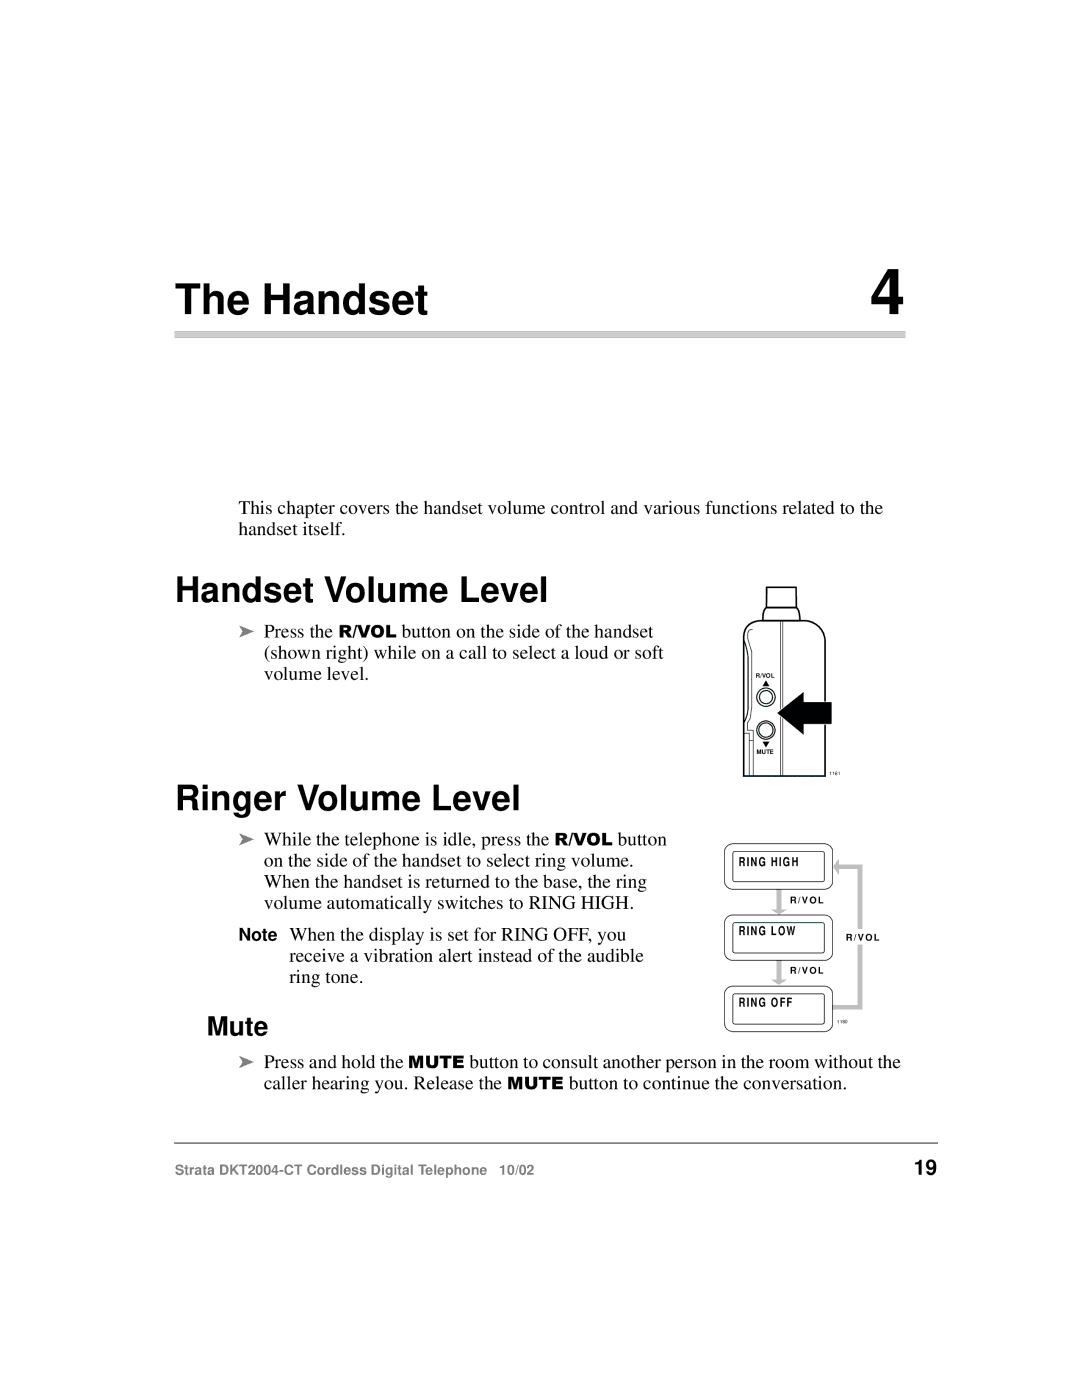 Toshiba DKT2004-CT manual Handset Volume Level, Ringer Volume Level, Mute 